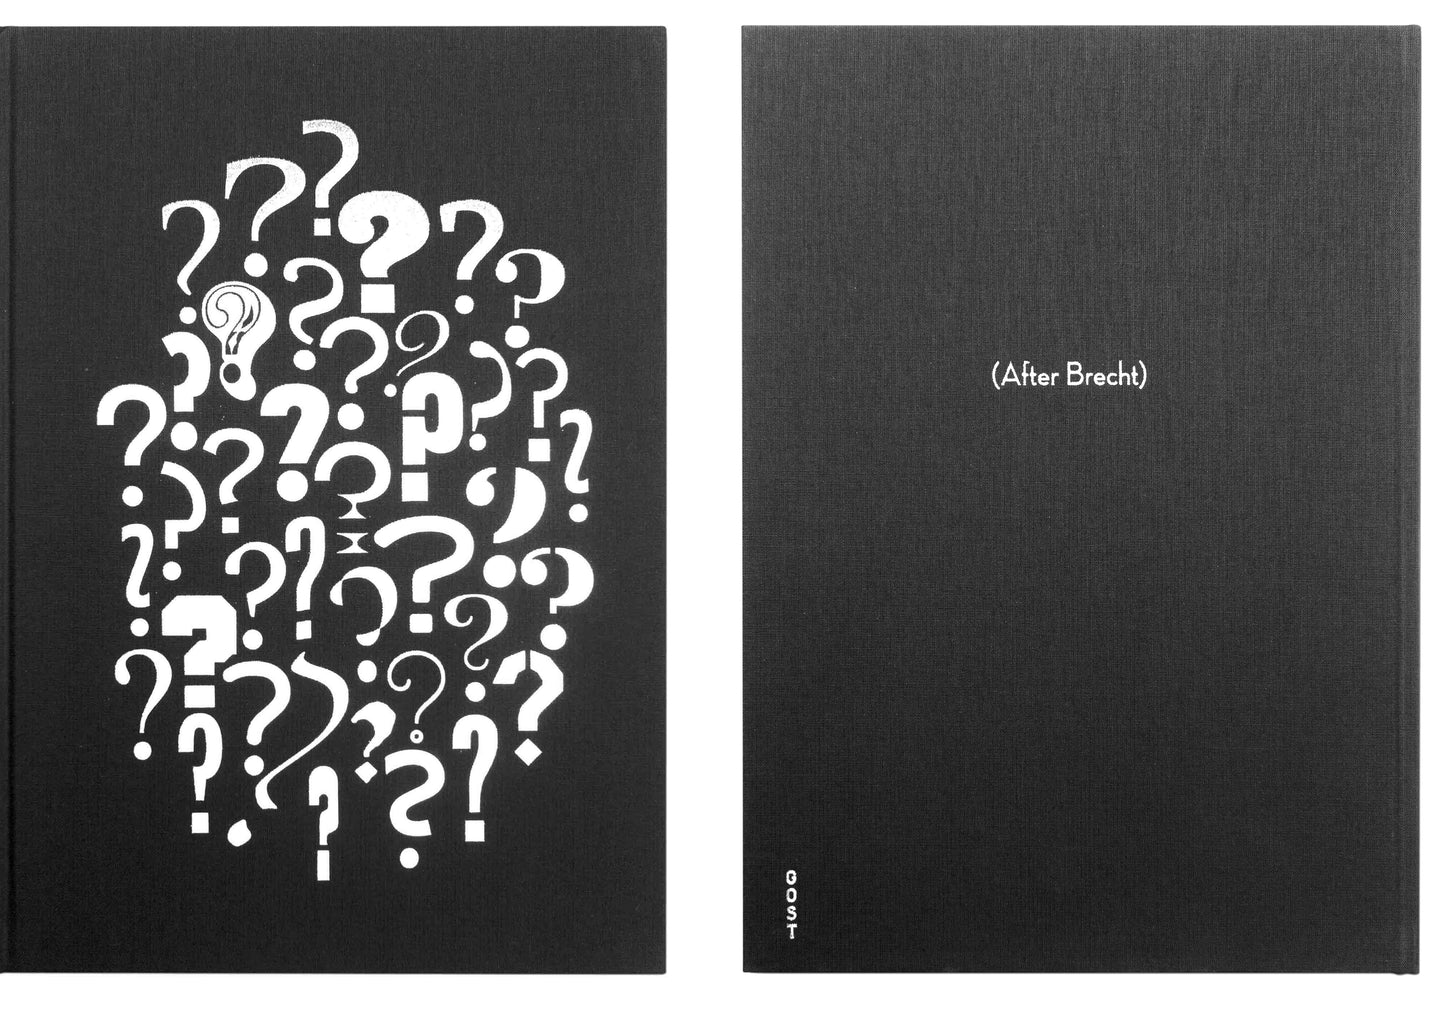 Questions (After Brecht)